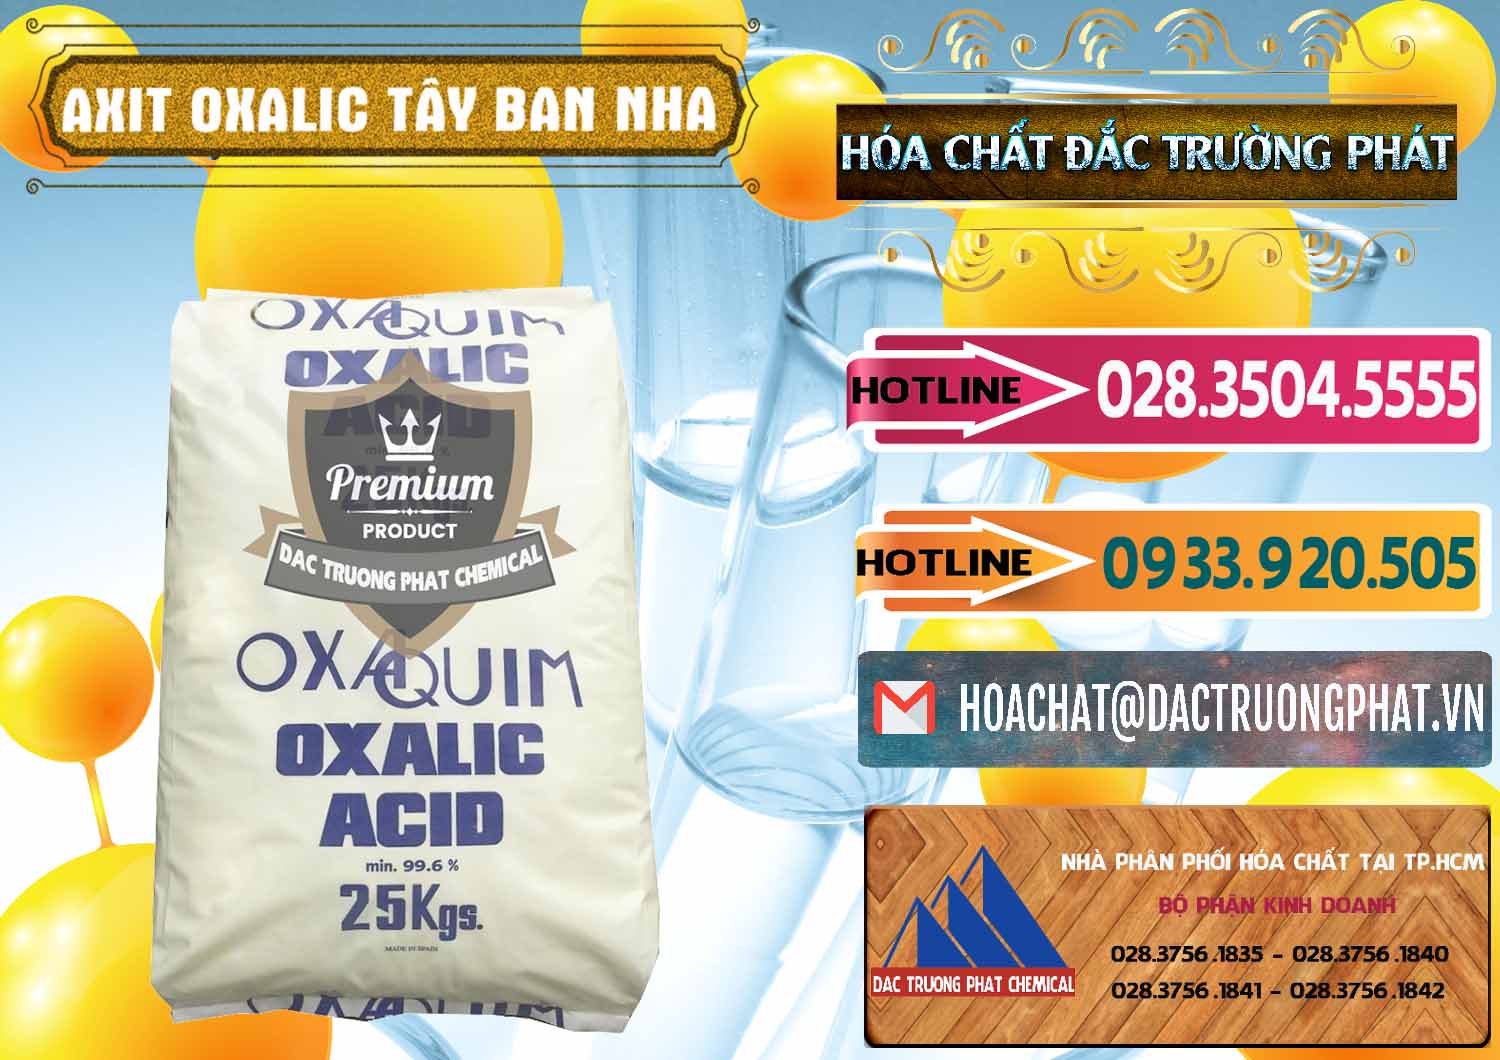 Nơi chuyên bán - phân phối Acid Oxalic – Axit Oxalic 99.6% Tây Ban Nha Spain - 0269 - Công ty chuyên cung cấp ( nhập khẩu ) hóa chất tại TP.HCM - dactruongphat.vn